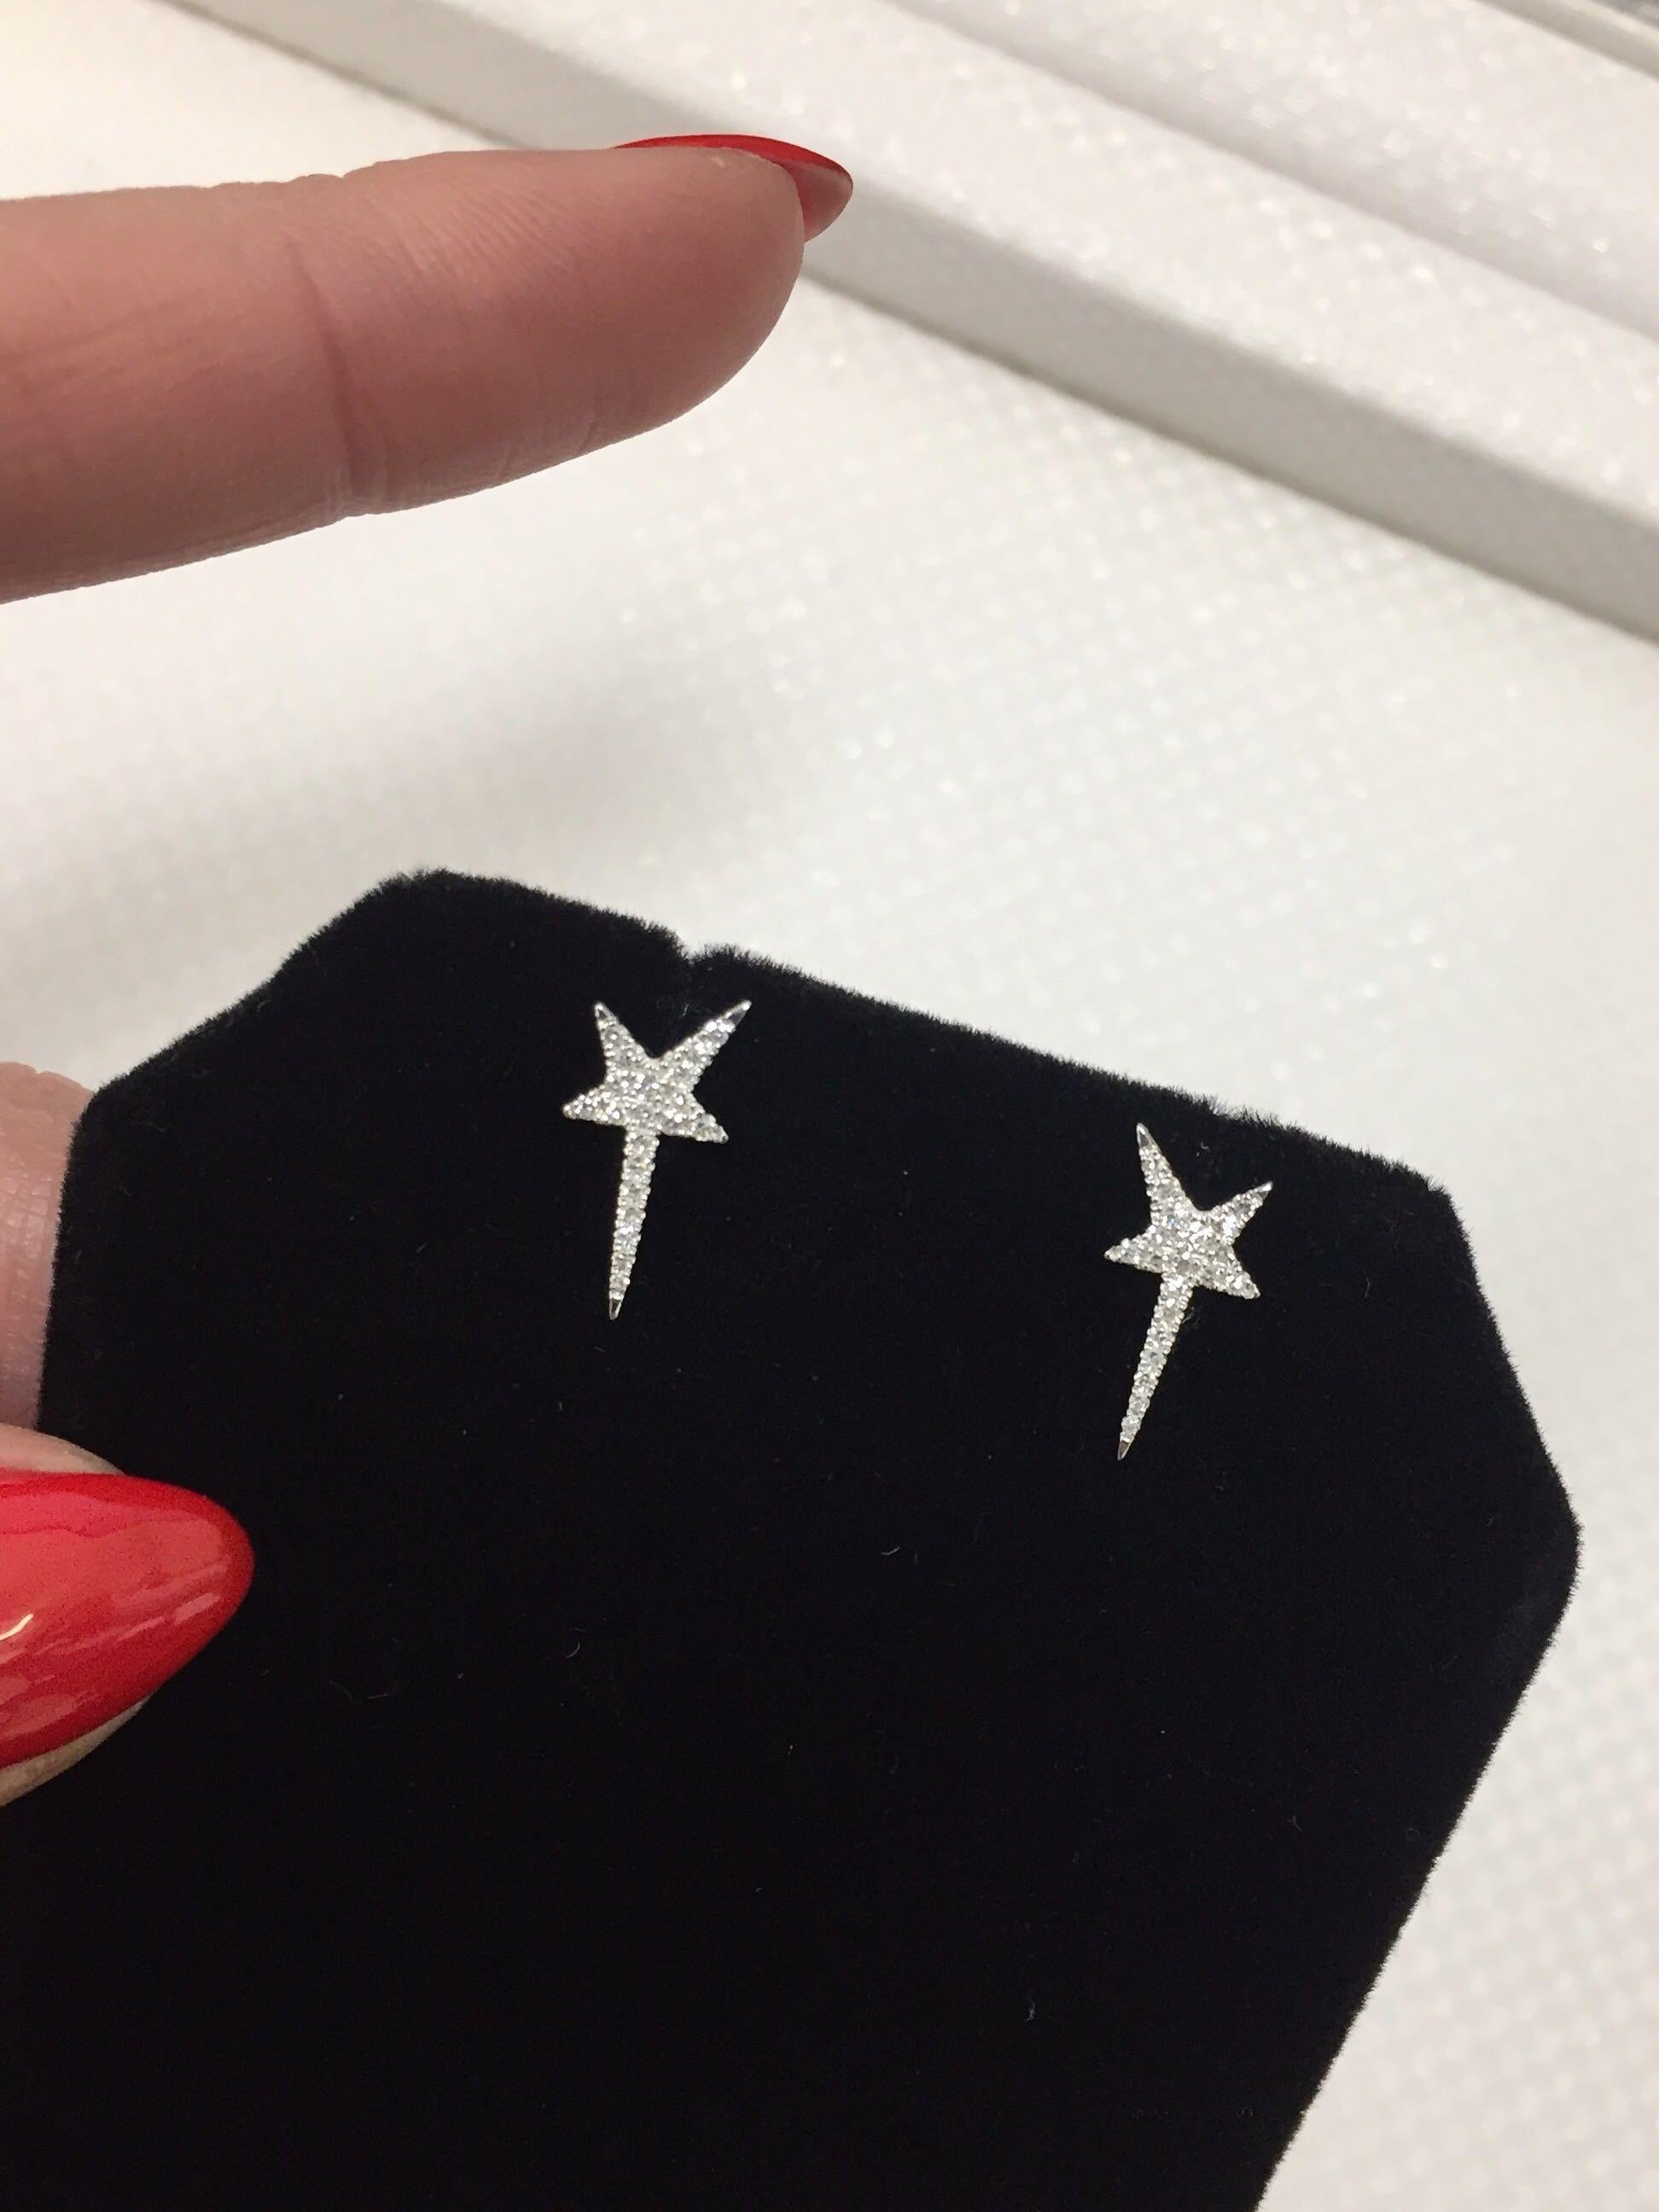 Rachel Koen Pave Diamond Star Stud Earrings 14K White Gold 0.13 Cttw For Sale 1